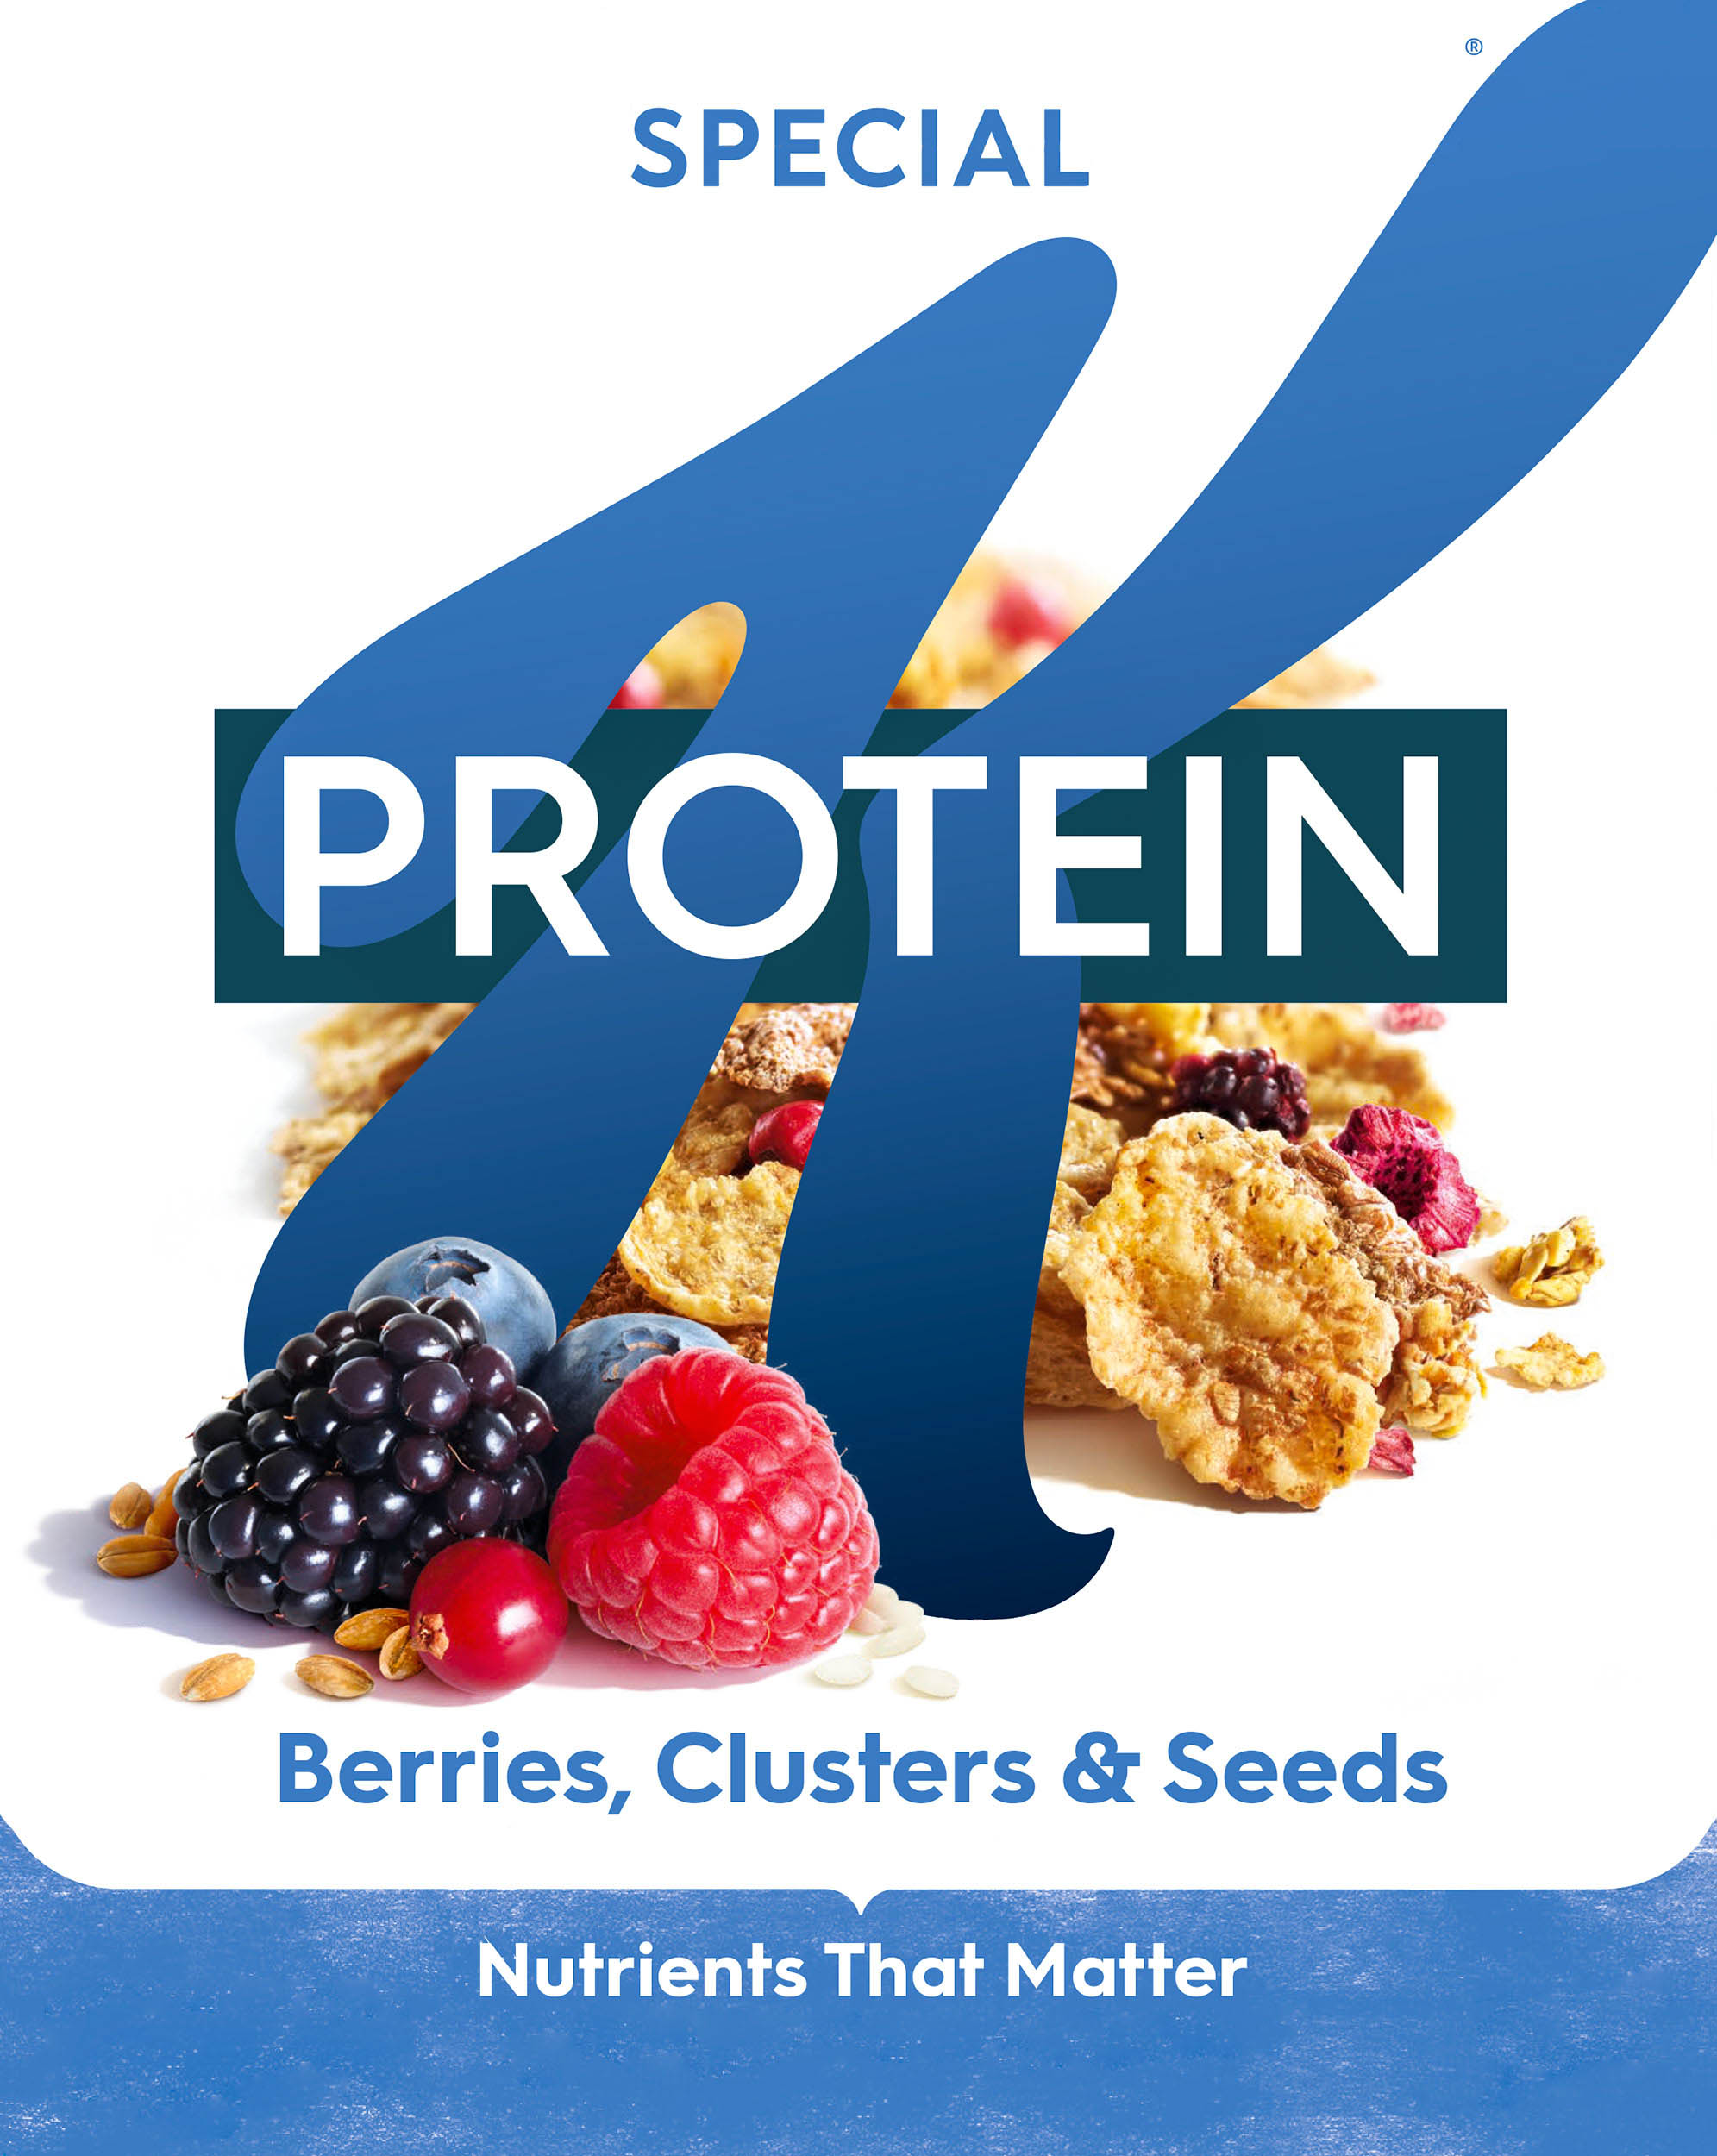 SpK_RTE_320g_ProteinBerries_UK_(R)